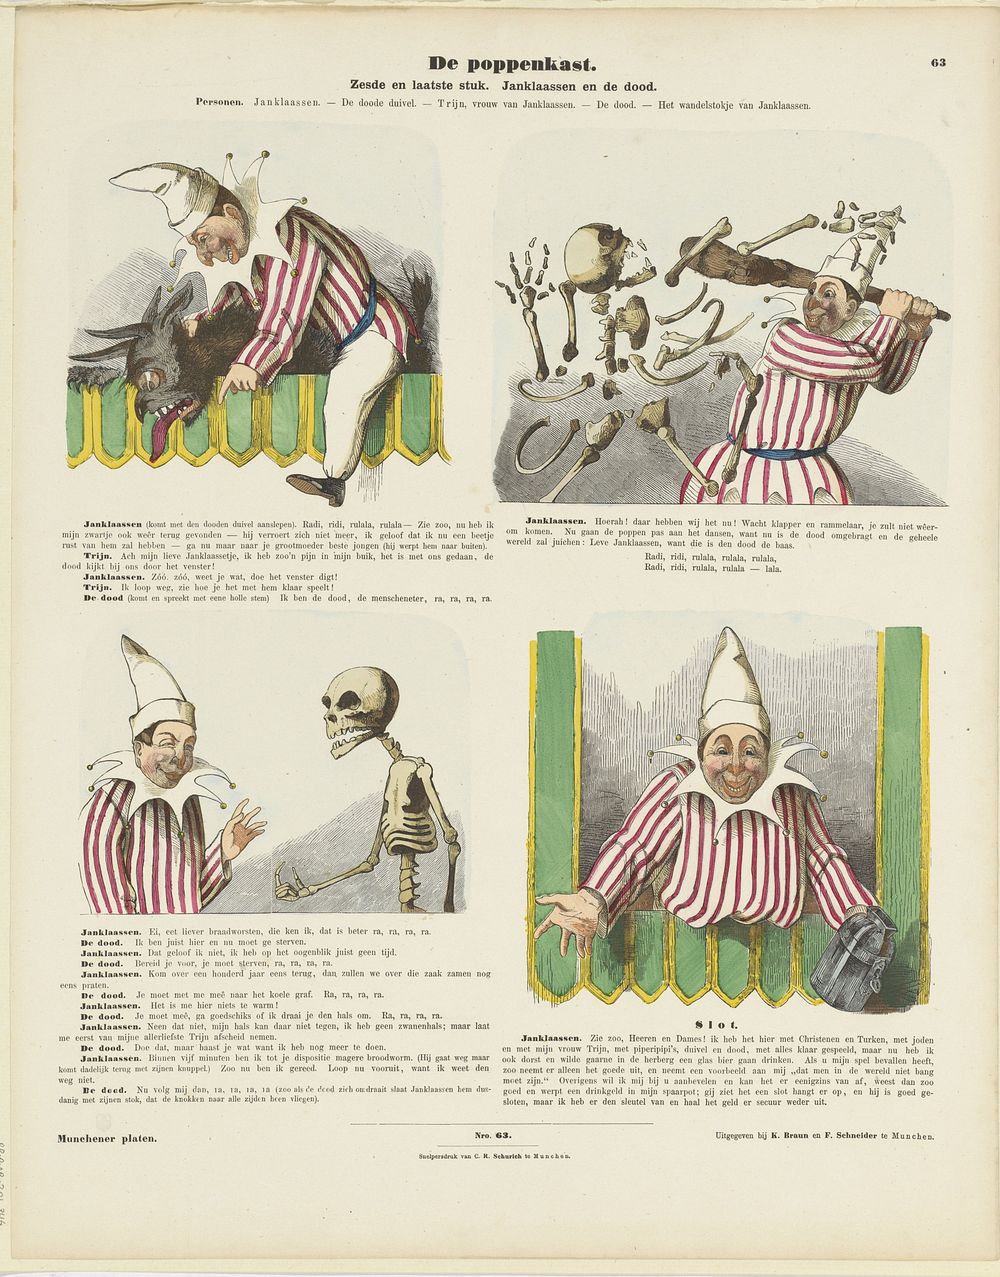 De poppen-kast / Zesde en laatste stuk. Janklaassen en de dood (1843 - c. 1920) by C Reinhardt, K Braun en Fr Schneider and…